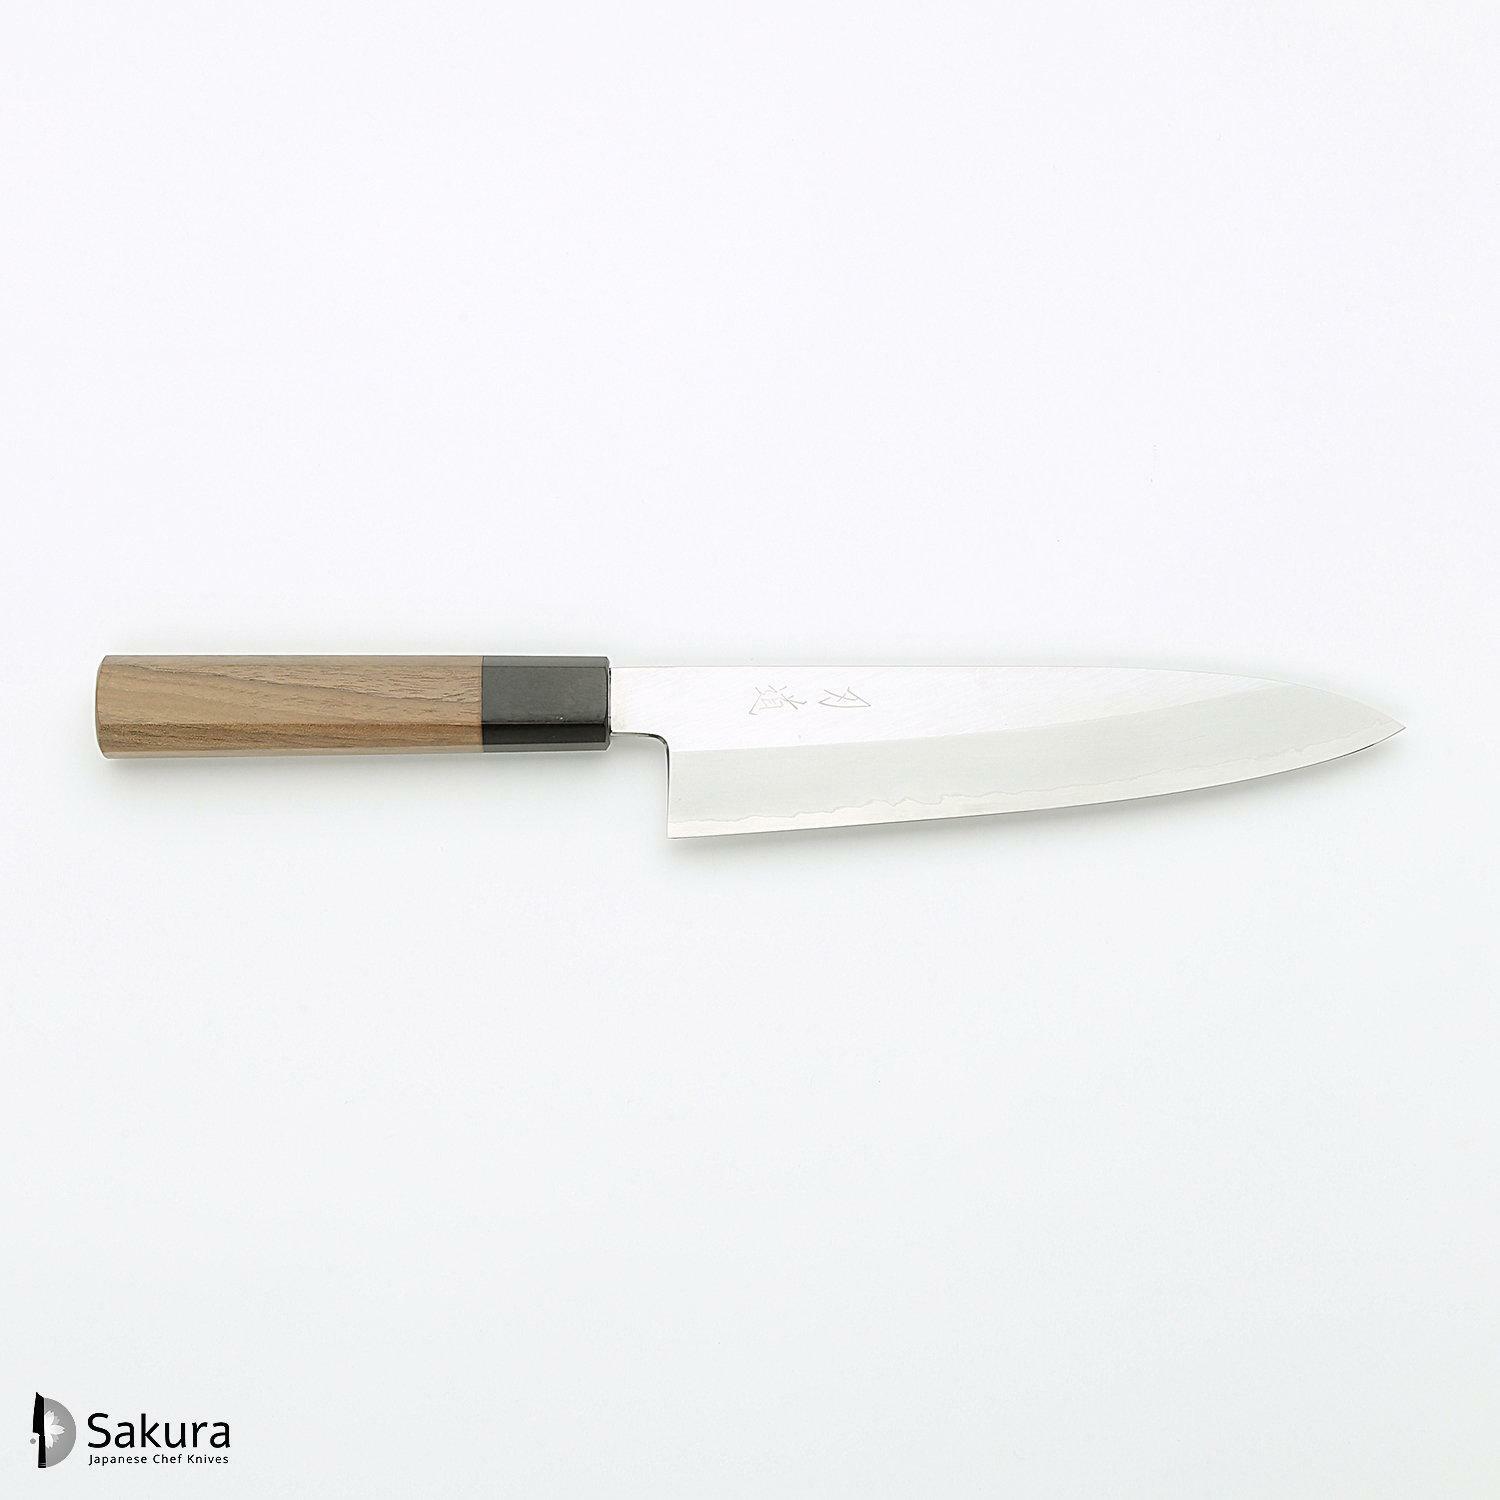 סכין שף רב-תכליתית גִּיוּטוֹ 210מ״מ מחושלת בעבודת יד 3 שכבות: פלדת פחמן יפנית מתקדמת מסוג Ginsan Silver#3 עטופה פלדת אל-חלד בגימור מט מלוטש גימור מט מלוטש האדו יפן